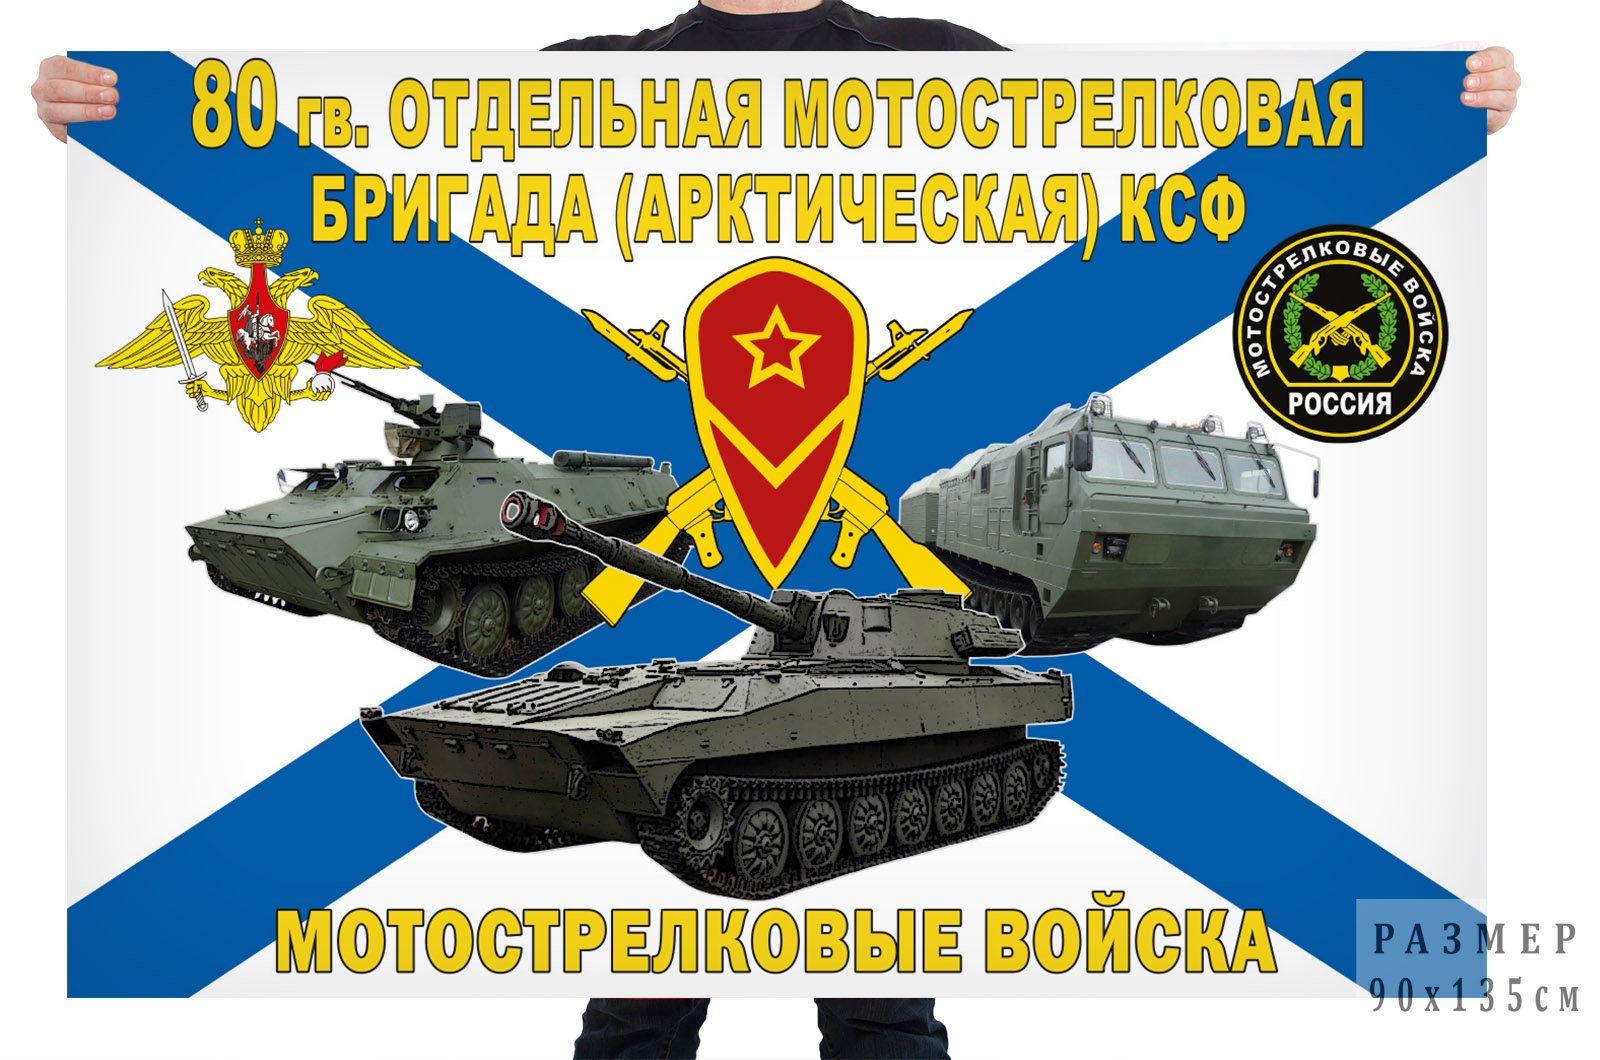 Флаг 80 отдельной мотострелковой бригады (арктической) КСФ